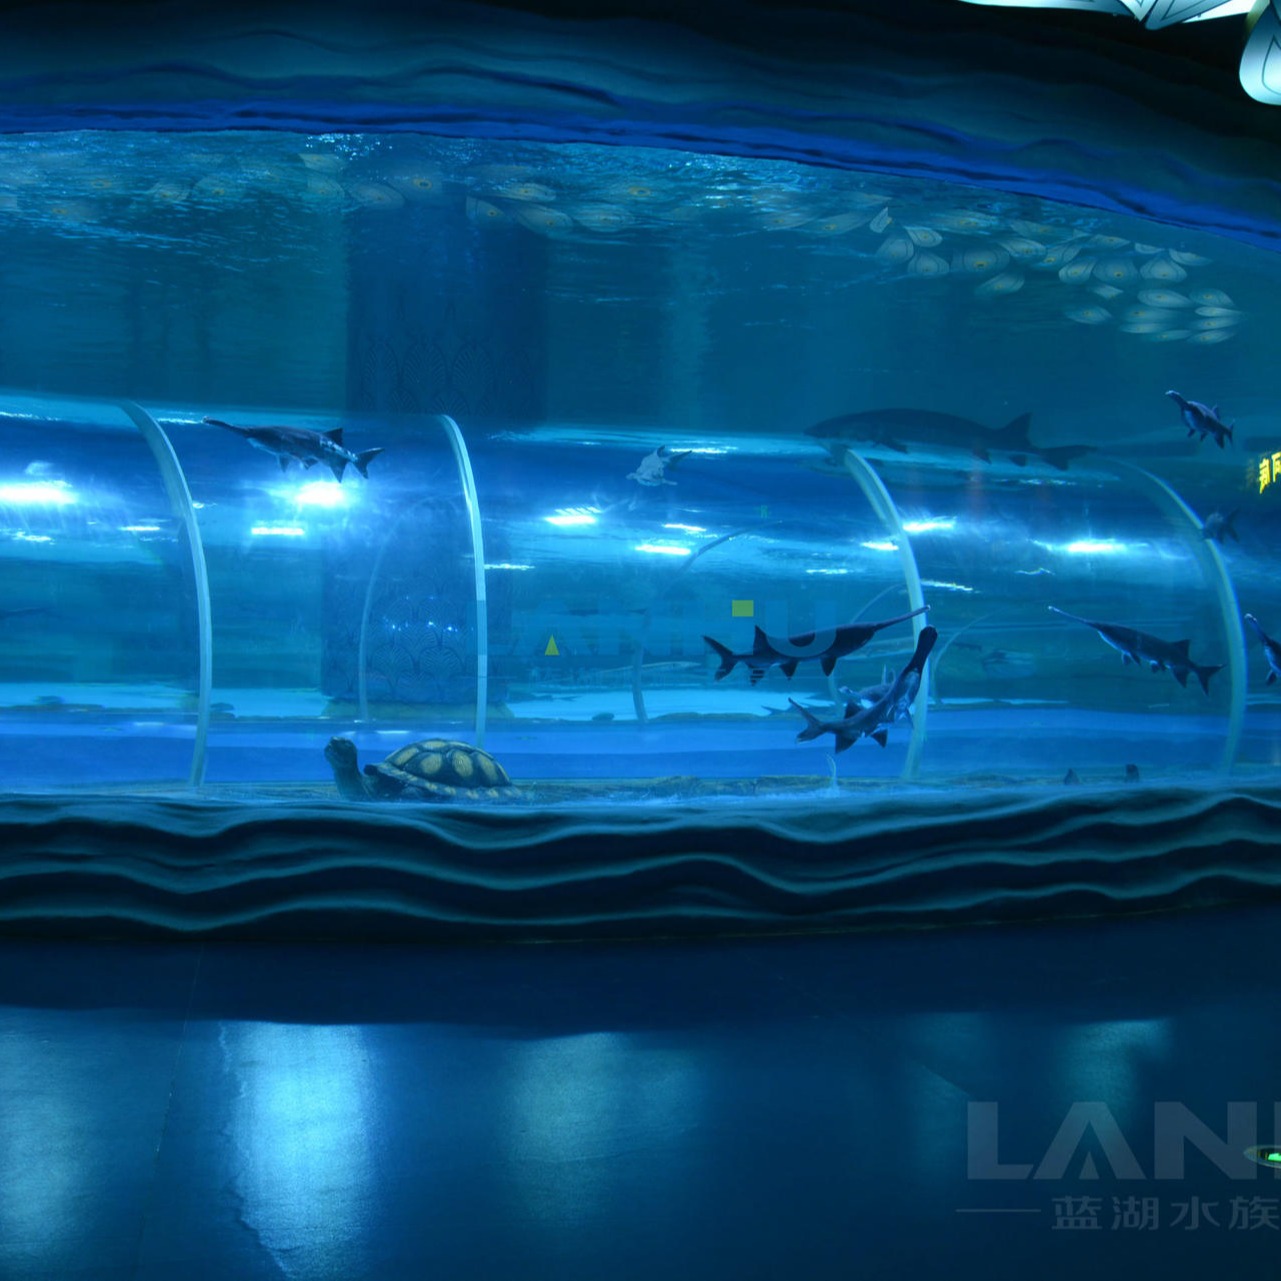 lanhu 海洋馆工程 大型亚克力鱼缸 有机玻璃水族箱鱼缸海水鱼缸设计